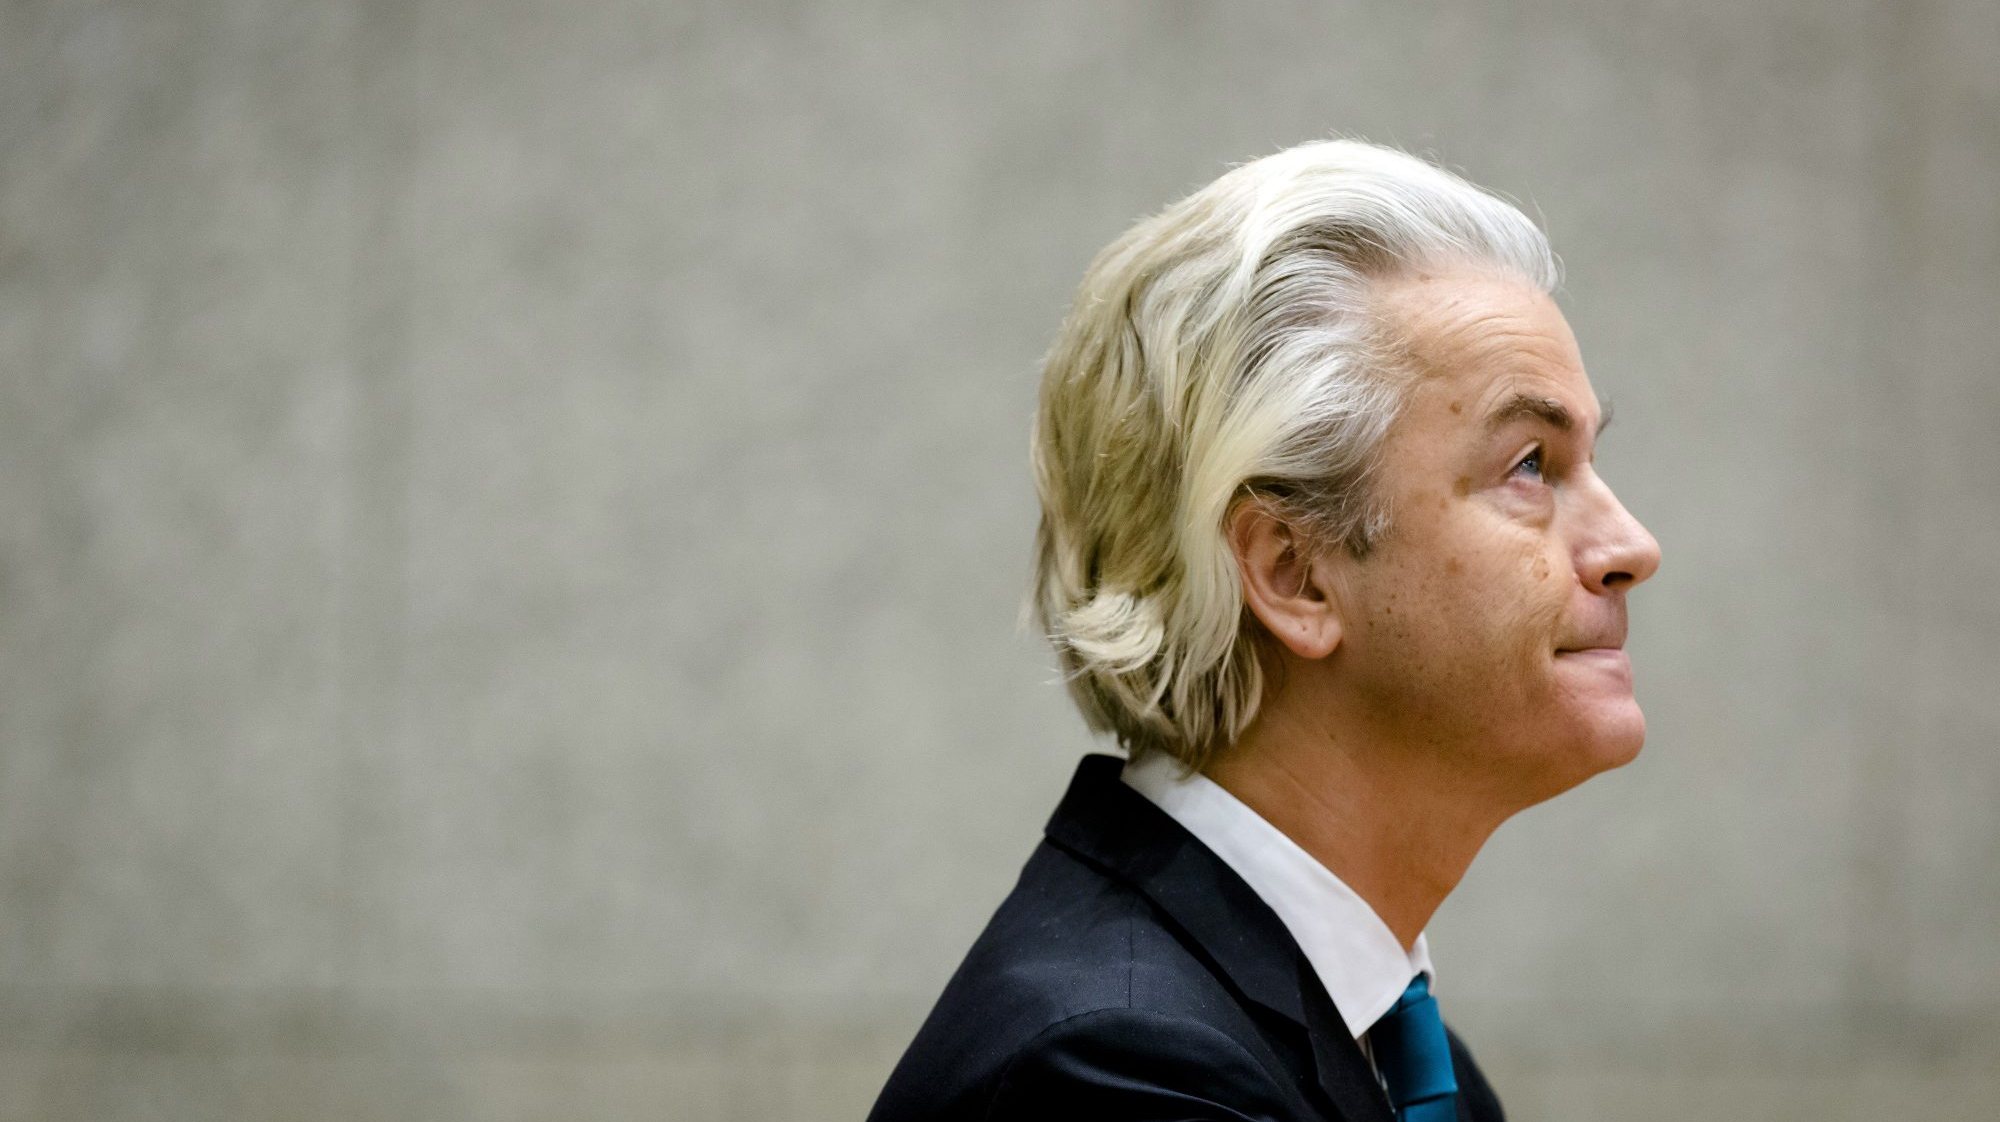 Geert Wilders venceu as eleições legislativas nos Países Baixos no passado dia 22 de novembro e tem tentado formar governo desde então, mas sem sucesso